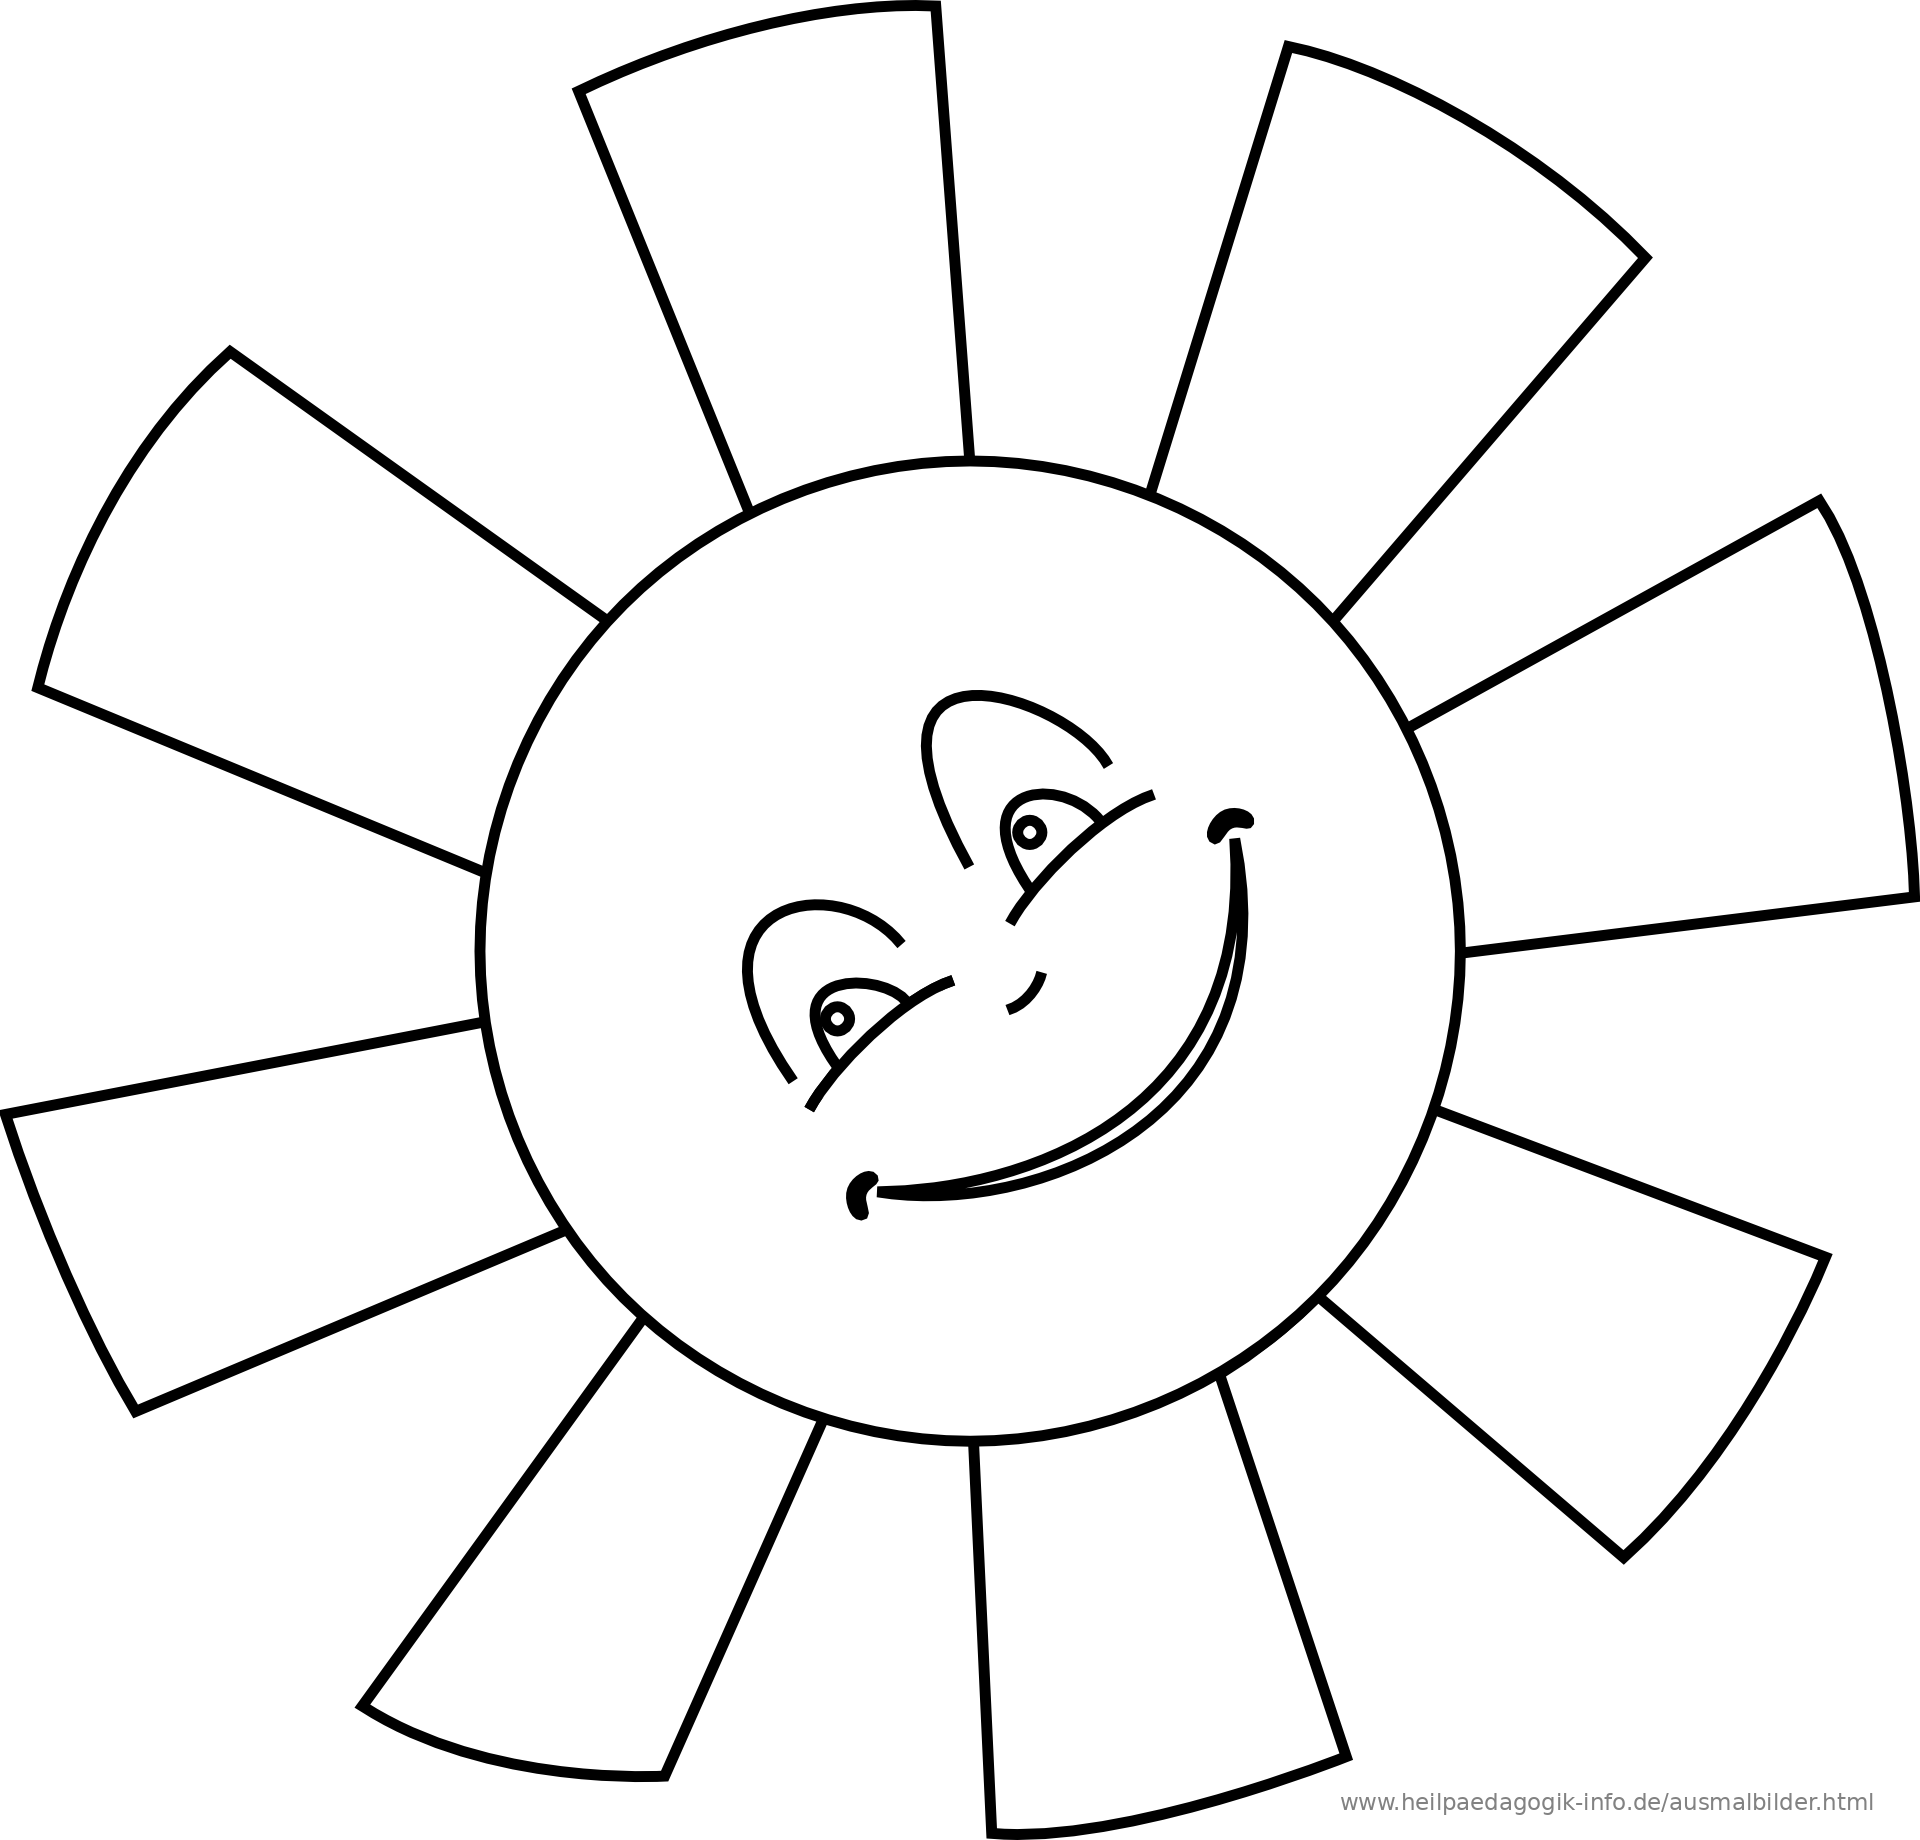 30 Ausmalbilder Für Kleinkinder Sonne | Ausmalbilder